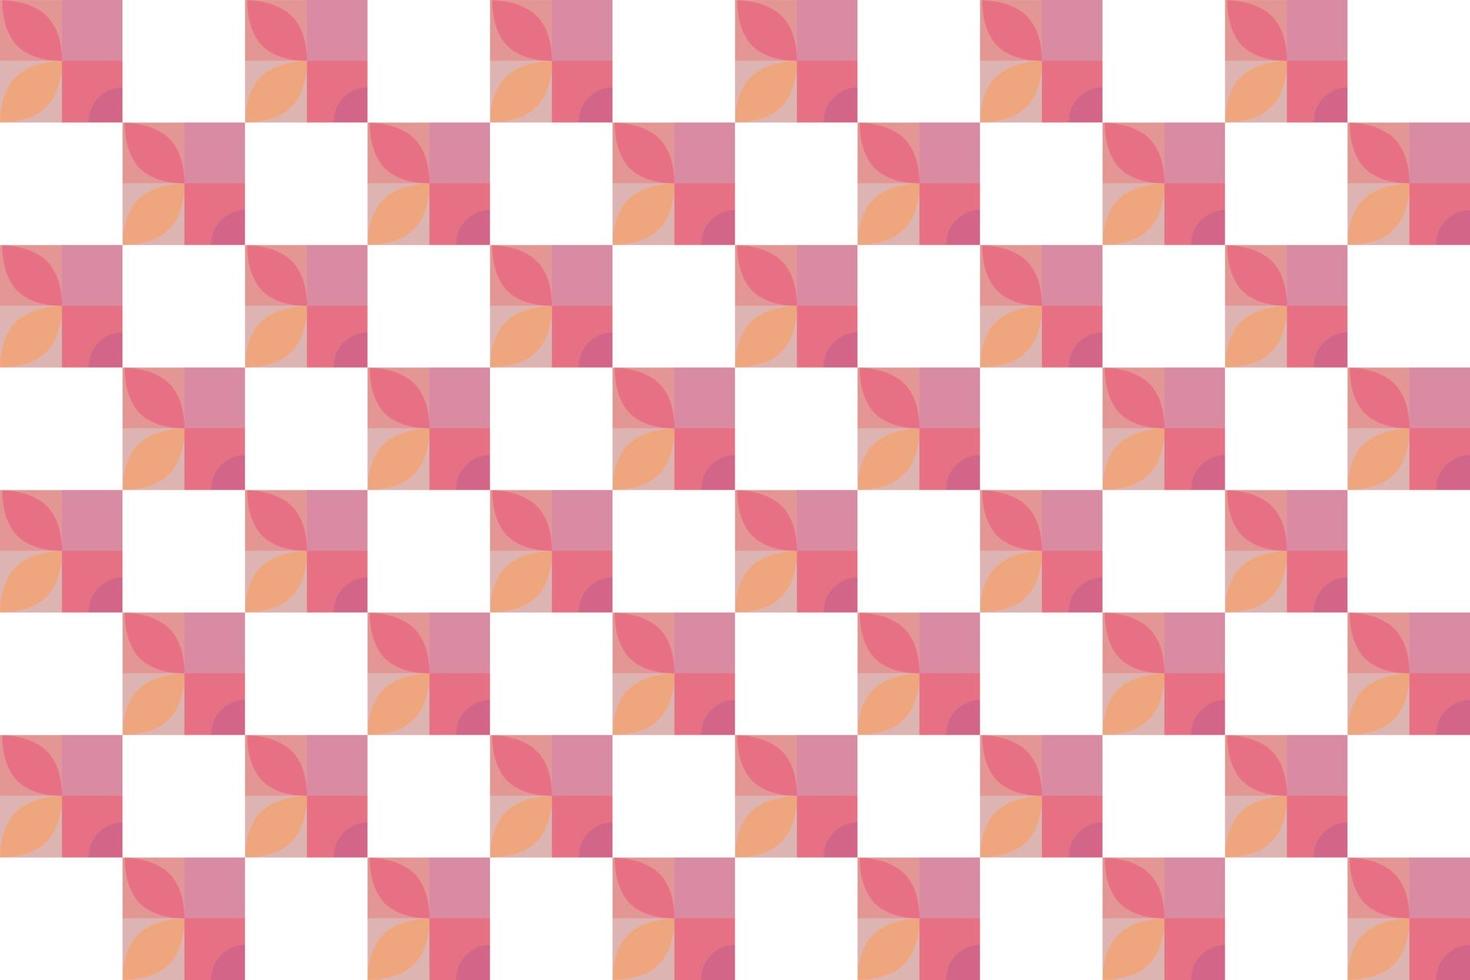 El vector de patrón a cuadros es un patrón de rayas modificadas que consisten en líneas horizontales y verticales cruzadas que forman cuadrados.